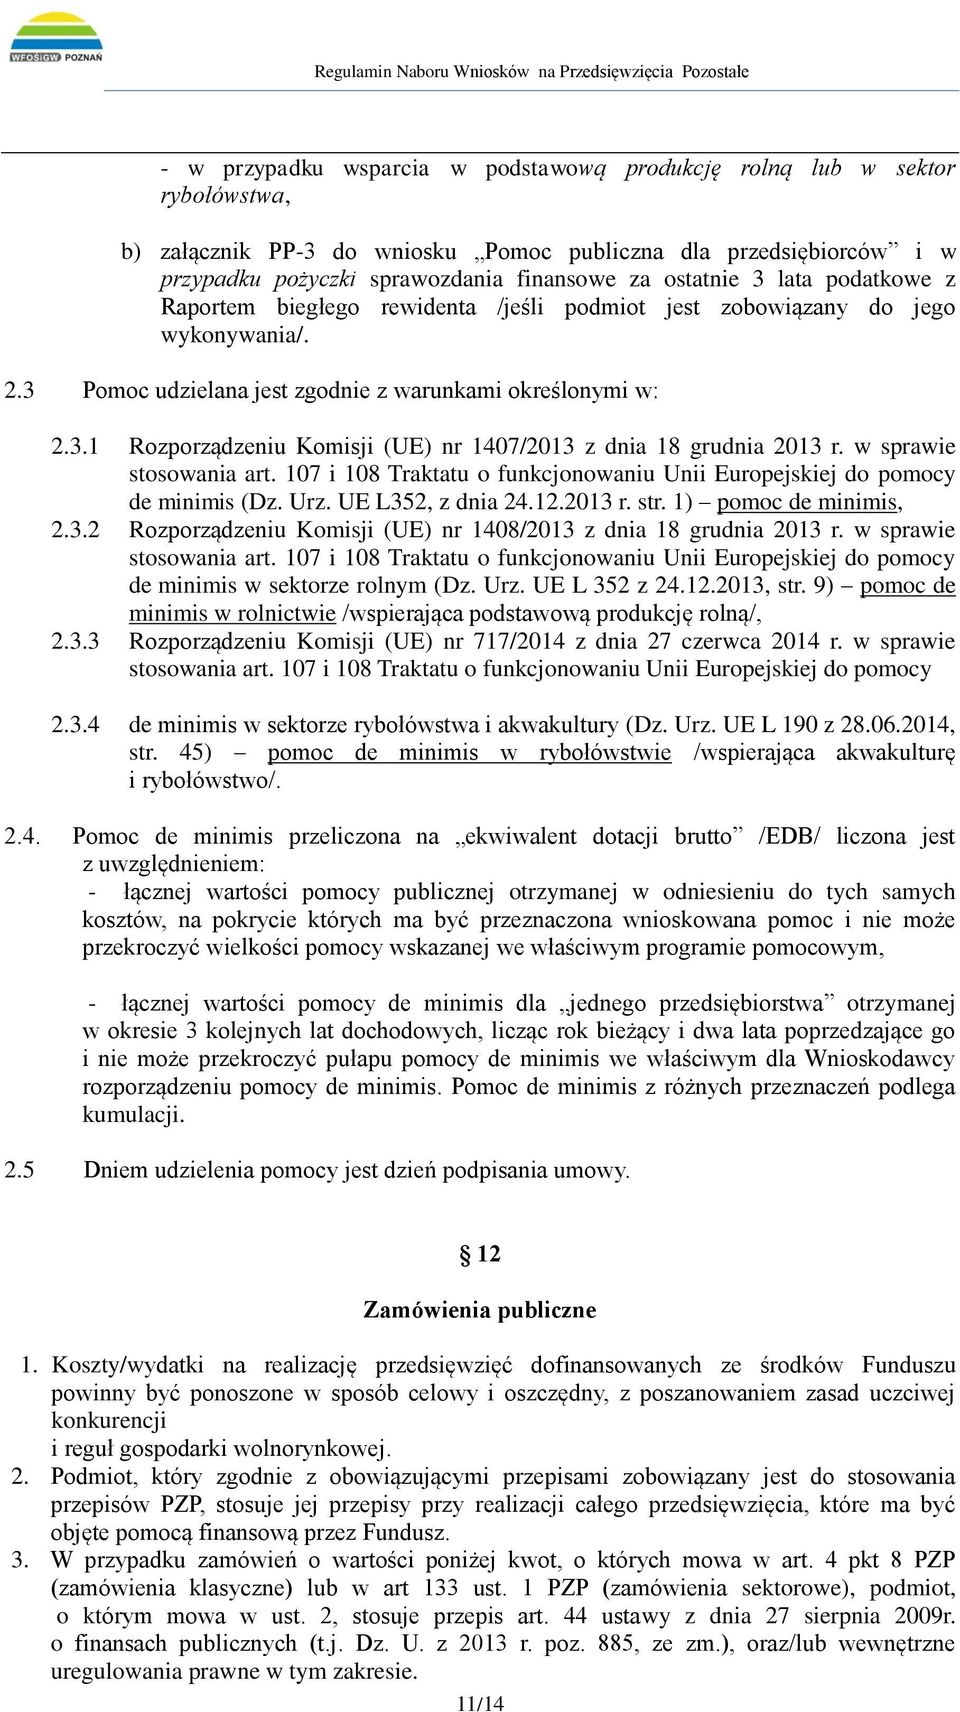 w sprawie stosowania art. 107 i 108 Traktatu o funkcjonowaniu Unii Europejskiej do pomocy de minimis (Dz. Urz. UE L352, z dnia 24.12.2013 r. str. 1) pomoc de minimis, 2.3.2 Rozporządzeniu Komisji (UE) nr 1408/2013 z dnia 18 grudnia 2013 r.